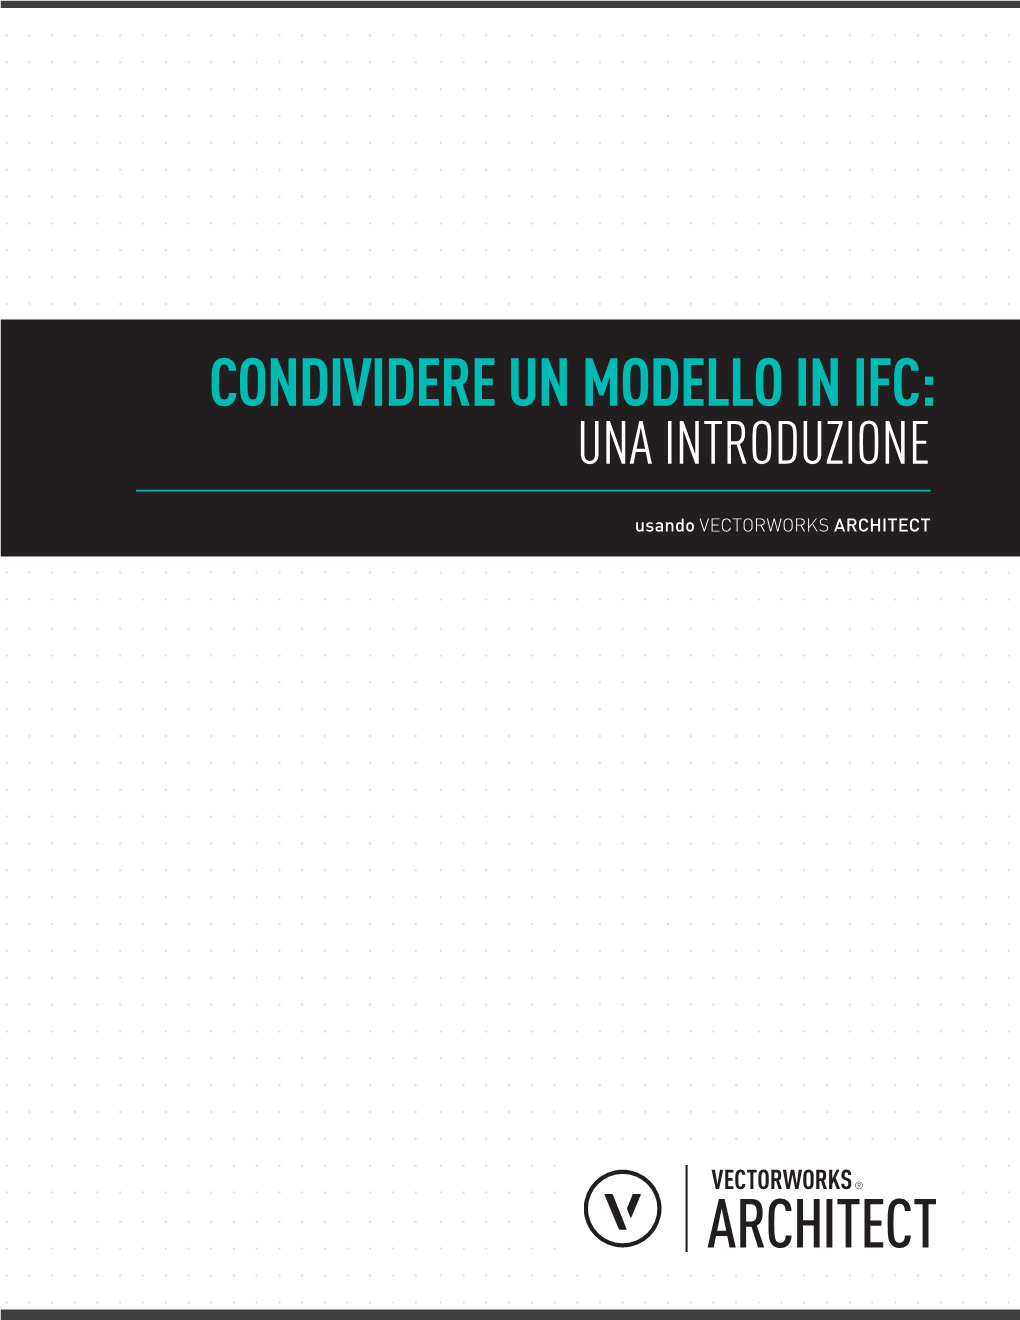 Condividere Un Modello in Ifc: Una Introduzione